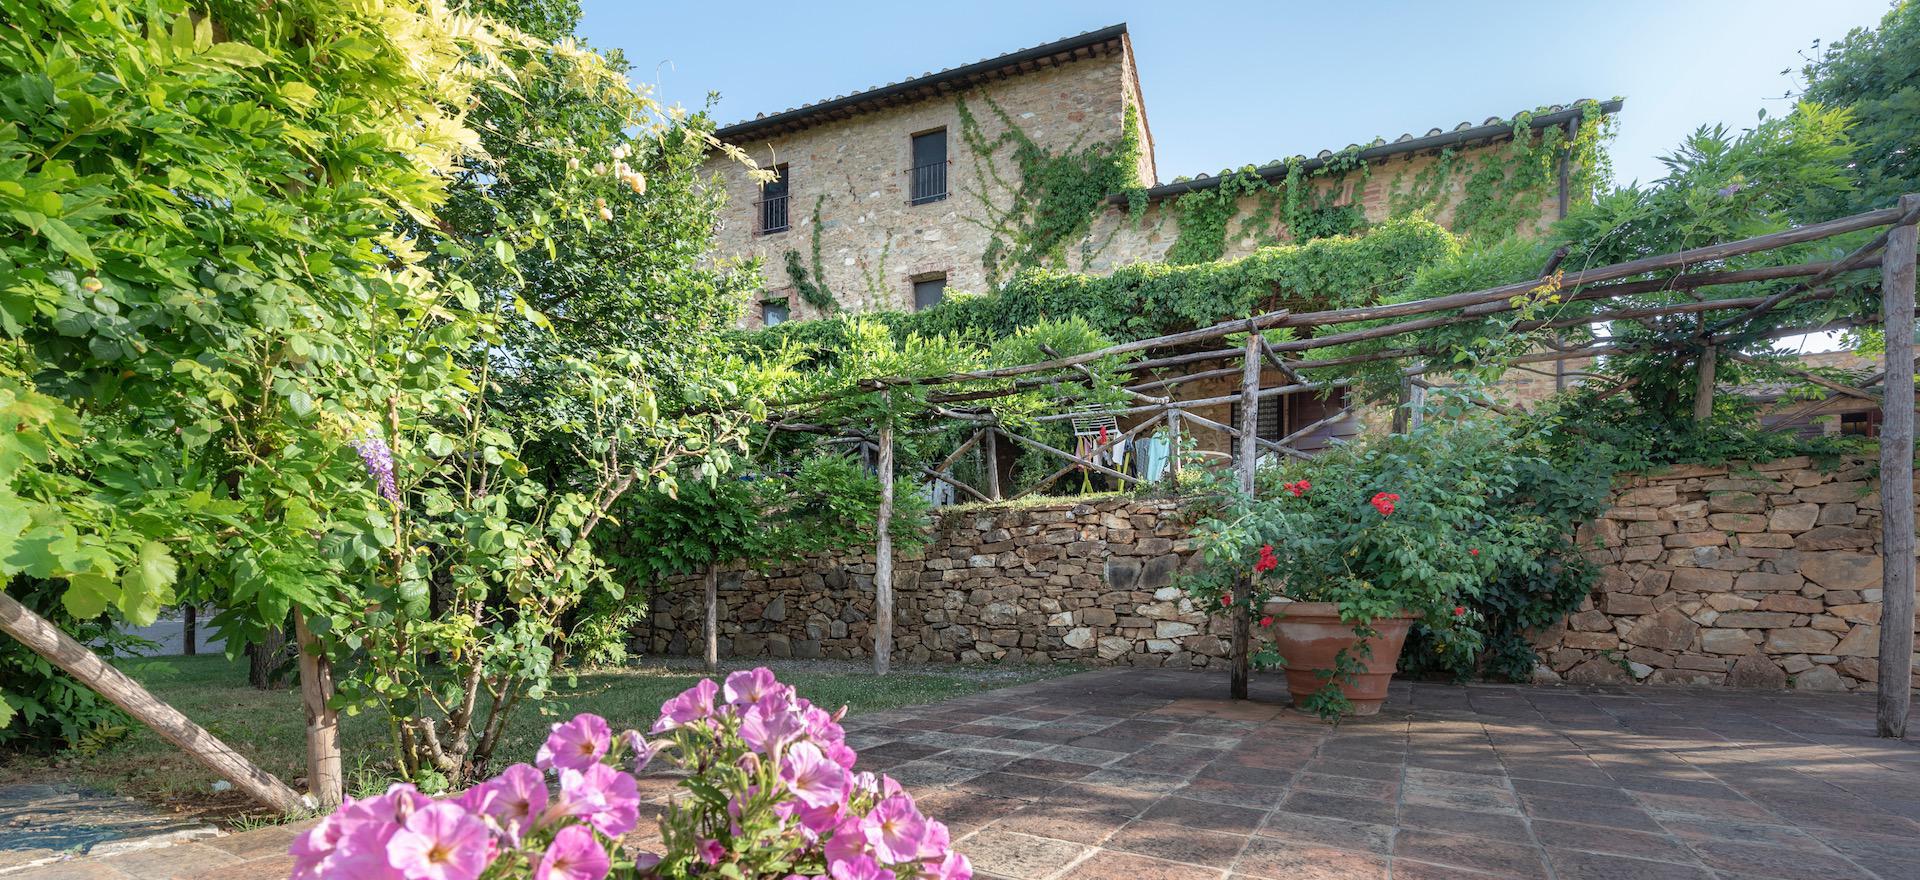 Agriturismo voor liefhebbers van natuur en cultuur in Toscane